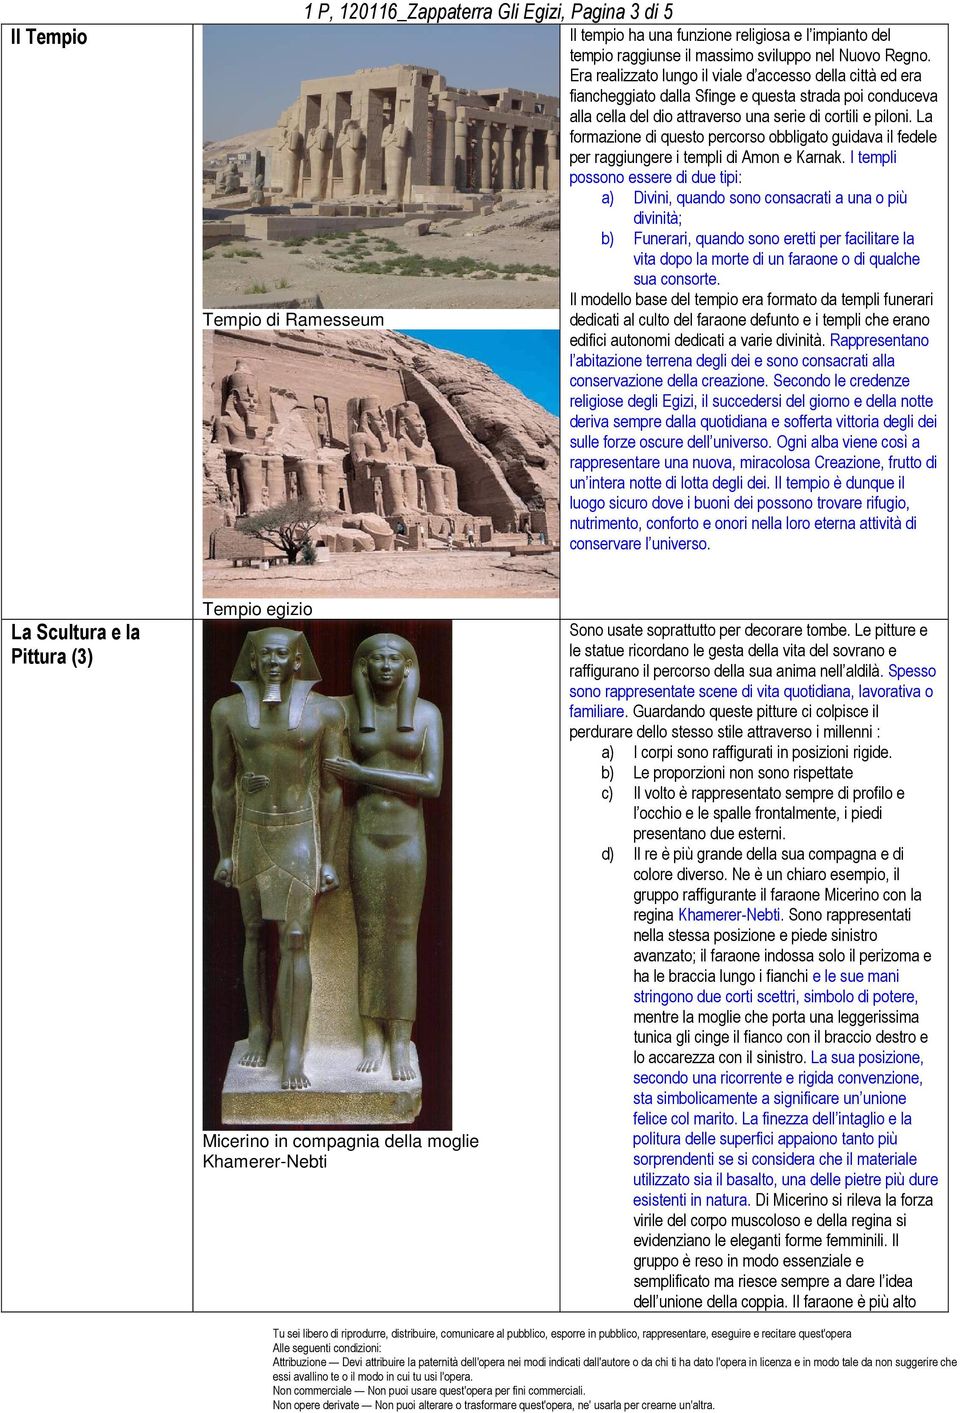 La formazione di questo percorso obbligato guidava il fedele per raggiungere i templi di Amon e Karnak.